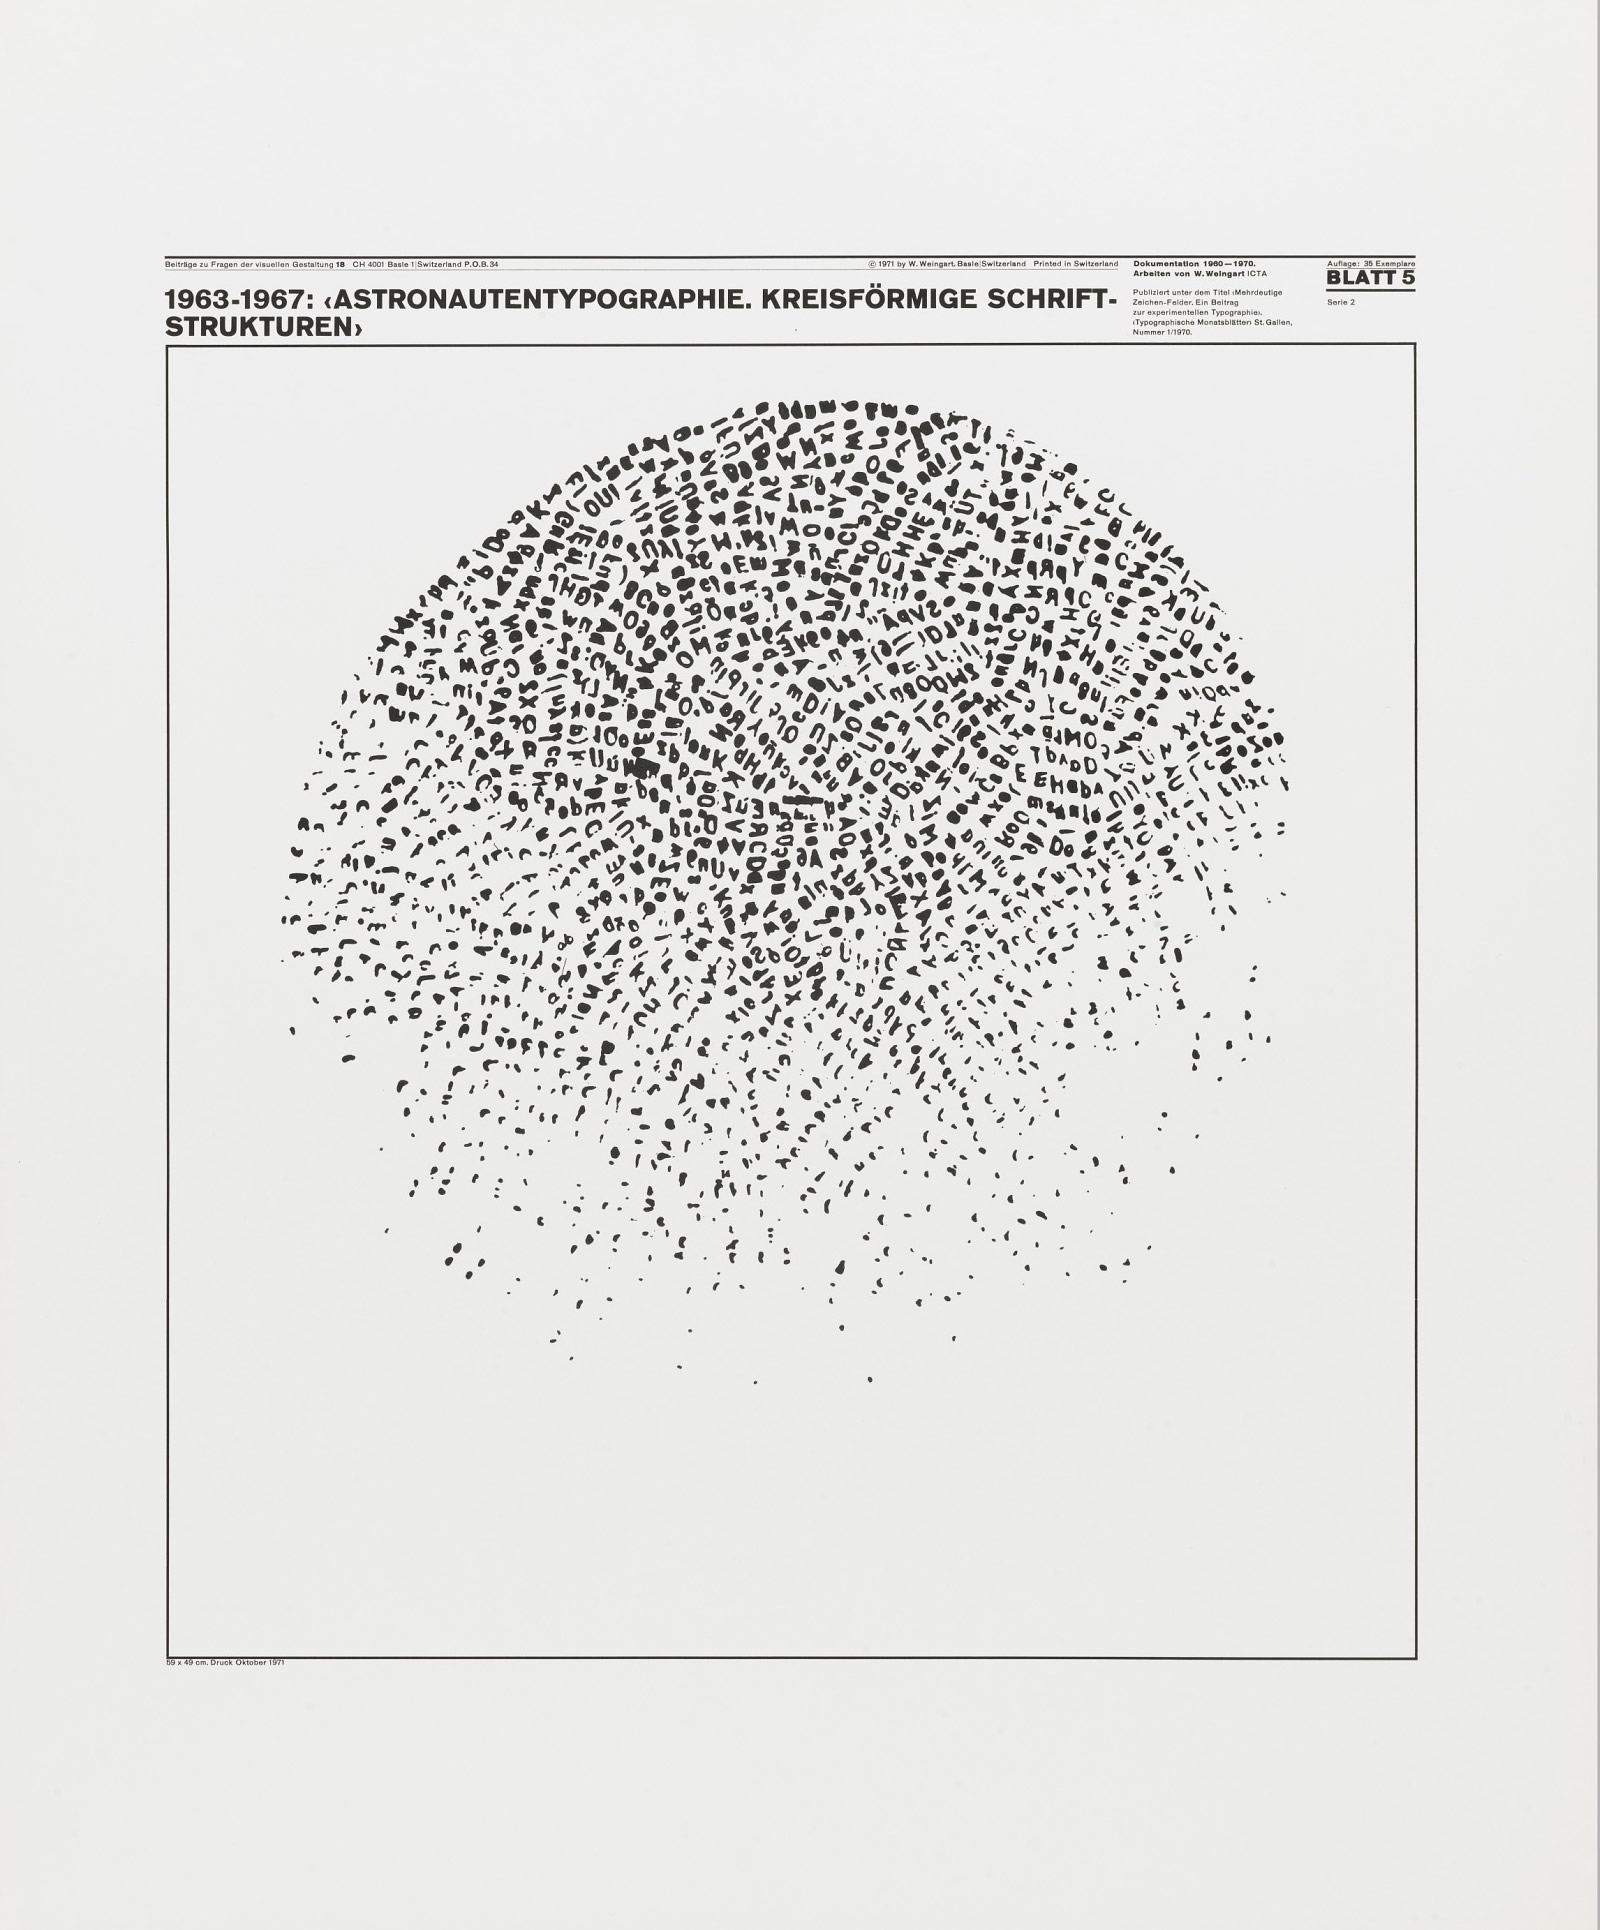 Wolfgang Weingart: Beiträge zu Fragen der visuellen Gestaltung 18, Blatt 5 from the portfolio Dokumentation 1960—1970, Arbeiten von W. Weingart, Designed 1963-67. Lithograph. (58.9 x 49 cm)